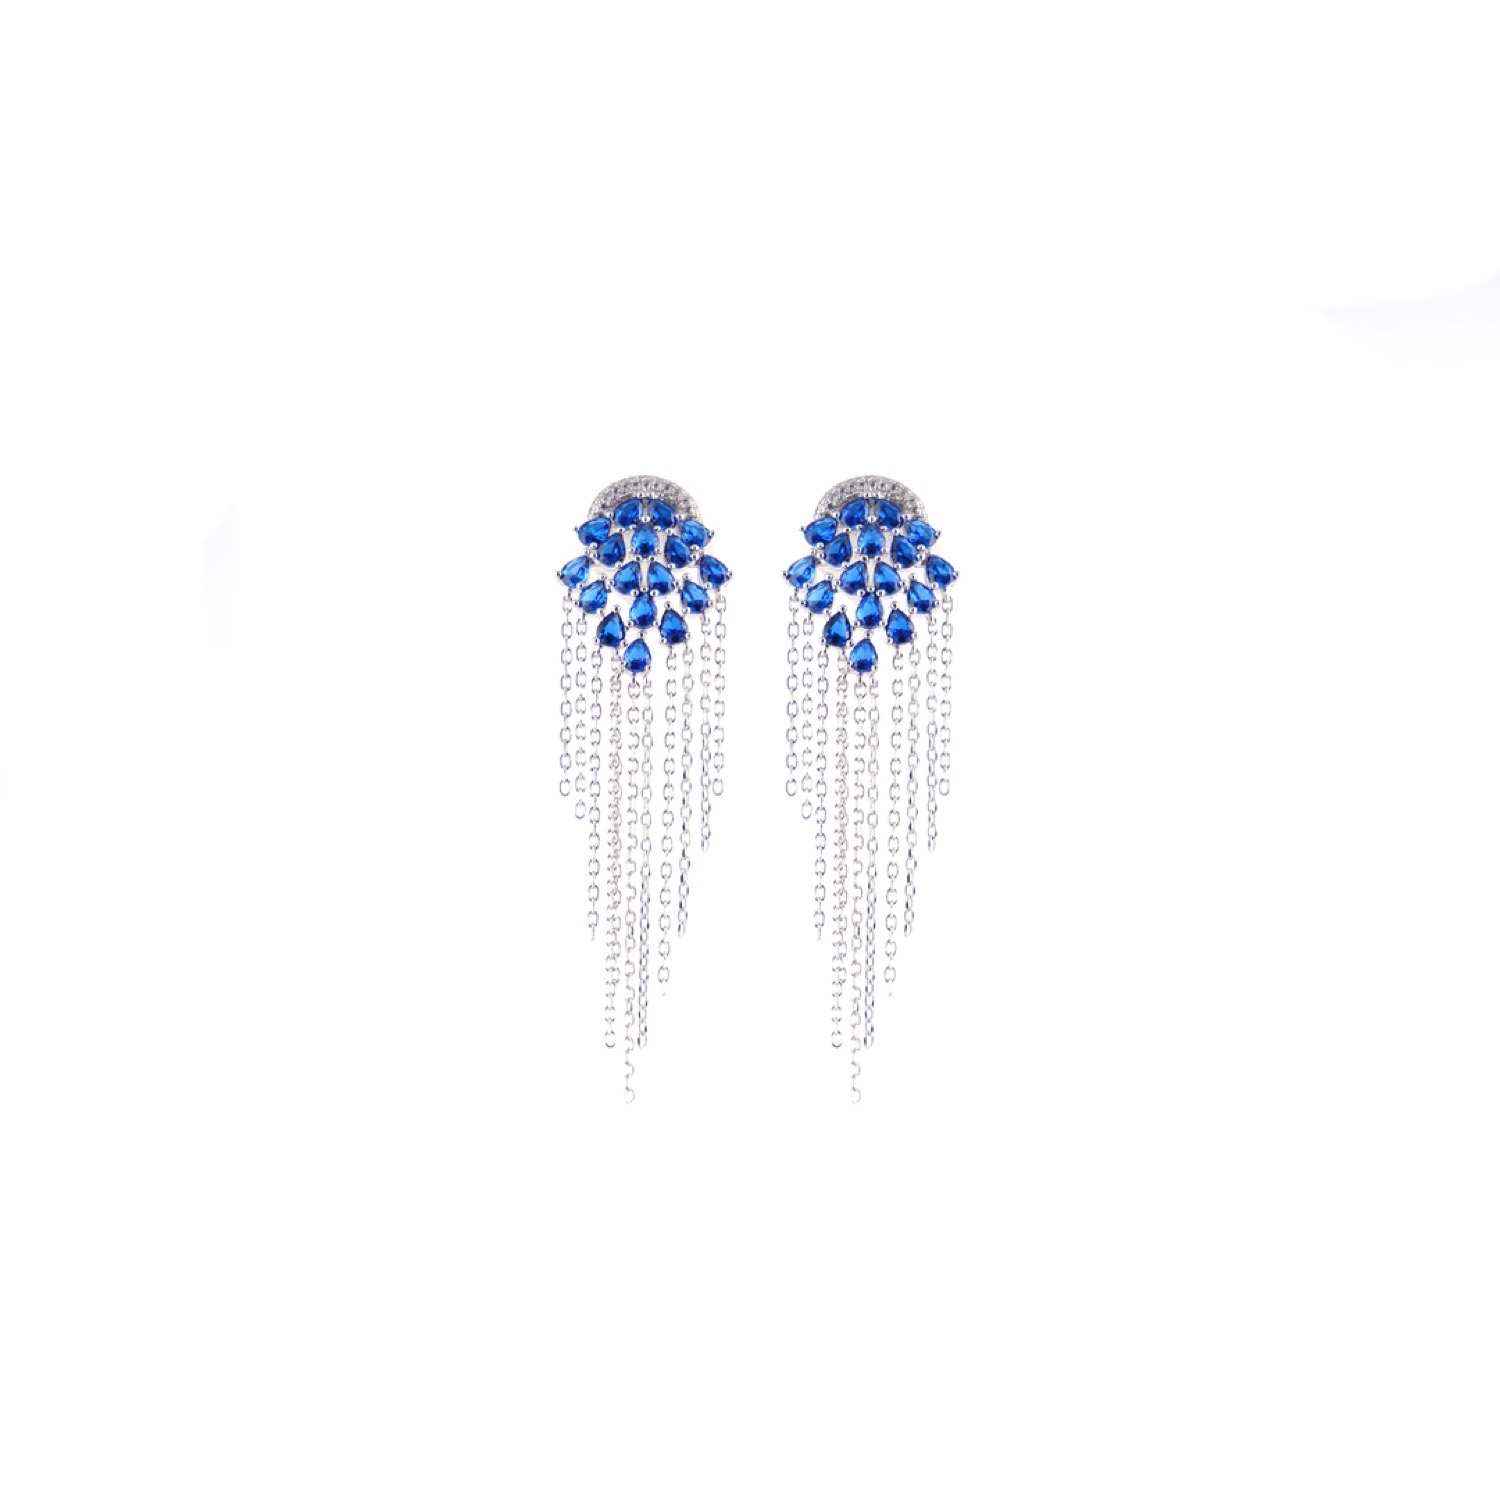 varam_earrings_102022_blue_stone_studded_tasselled_silver_chain_string_silver_earrings-1